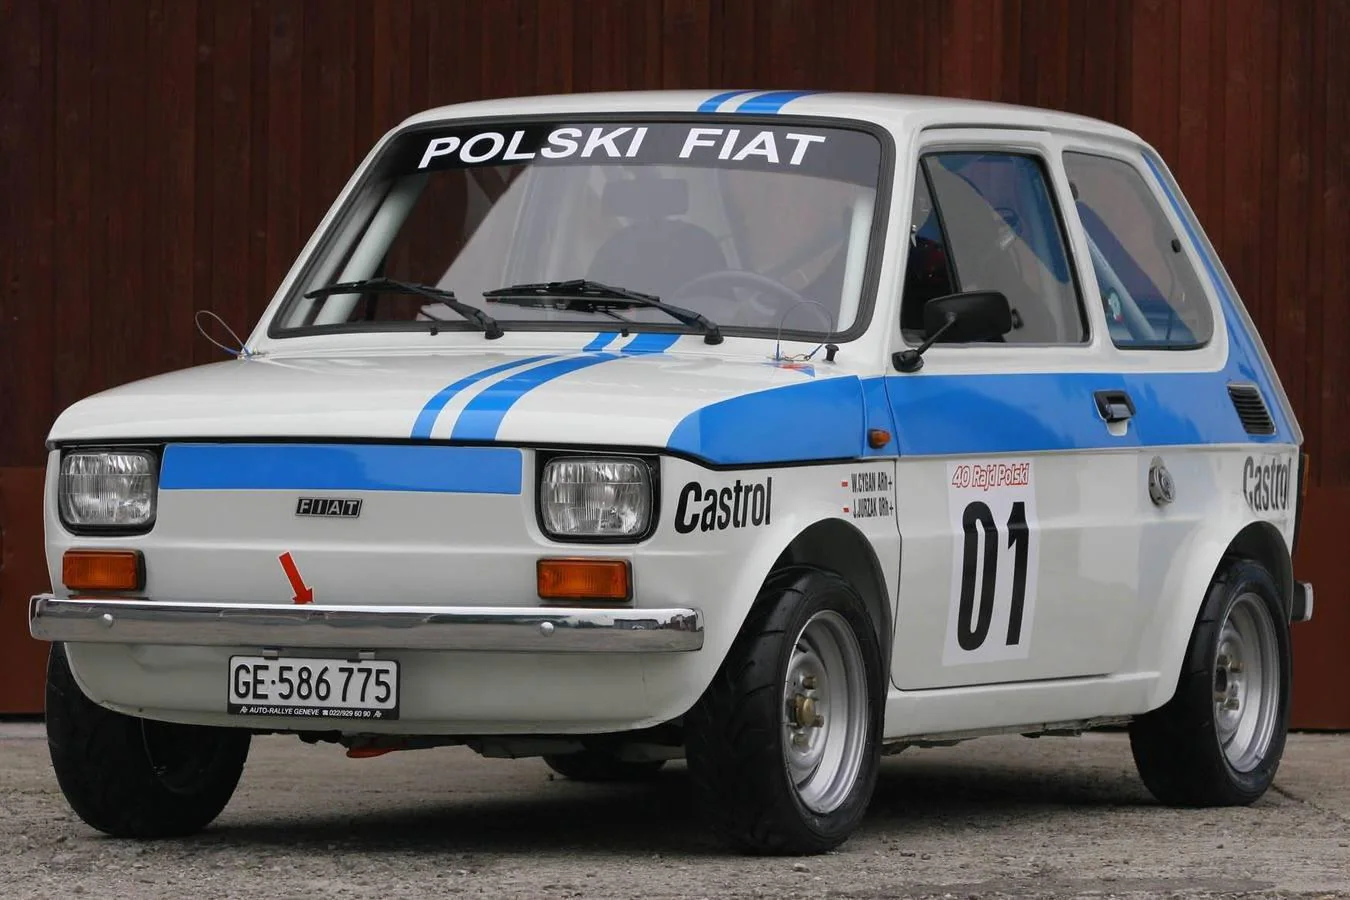 En Polonia, y bajo licencia de Fiat, el Fiat Polski 126 se produjo entre 1973 y 2003